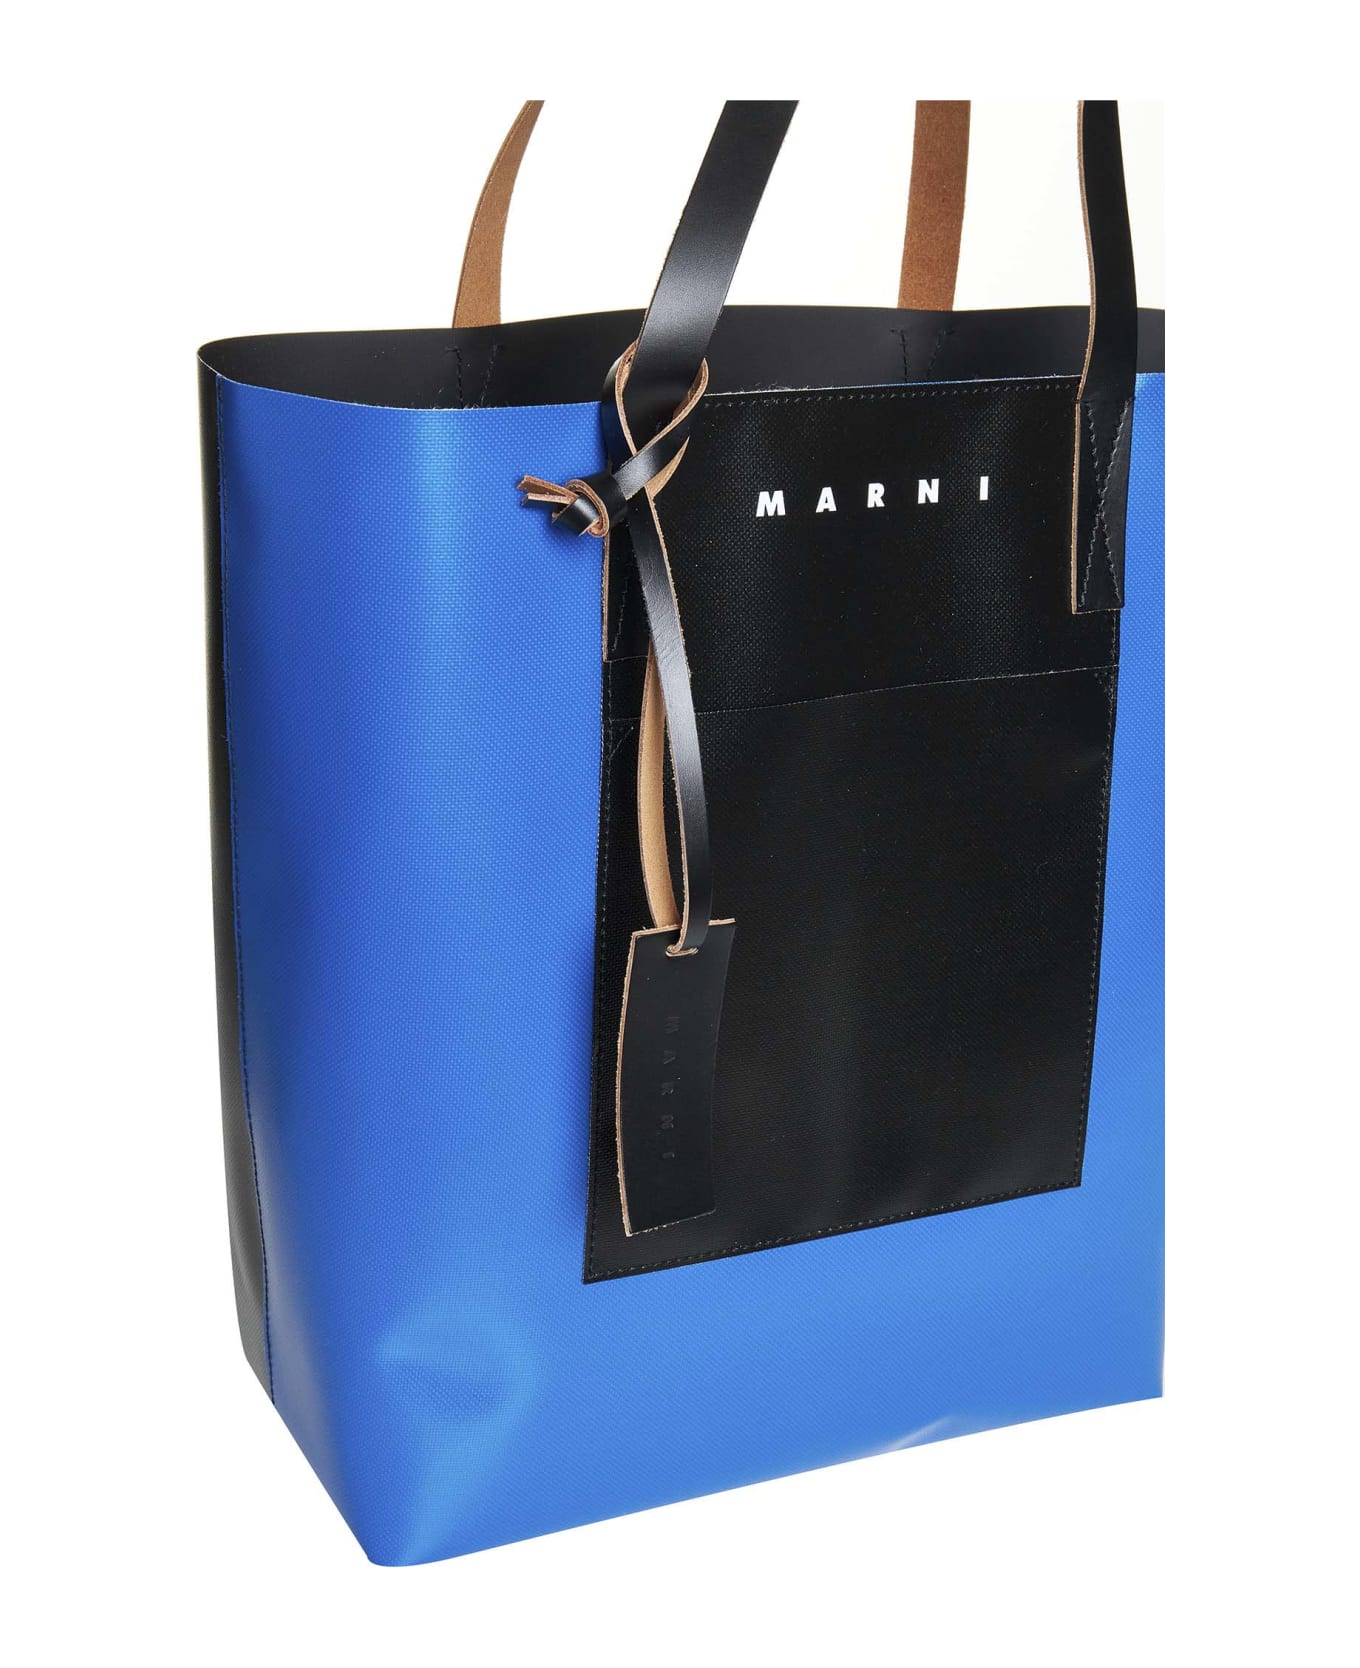 Marni Tribeca Shopping Bag - Royal black black トートバッグ